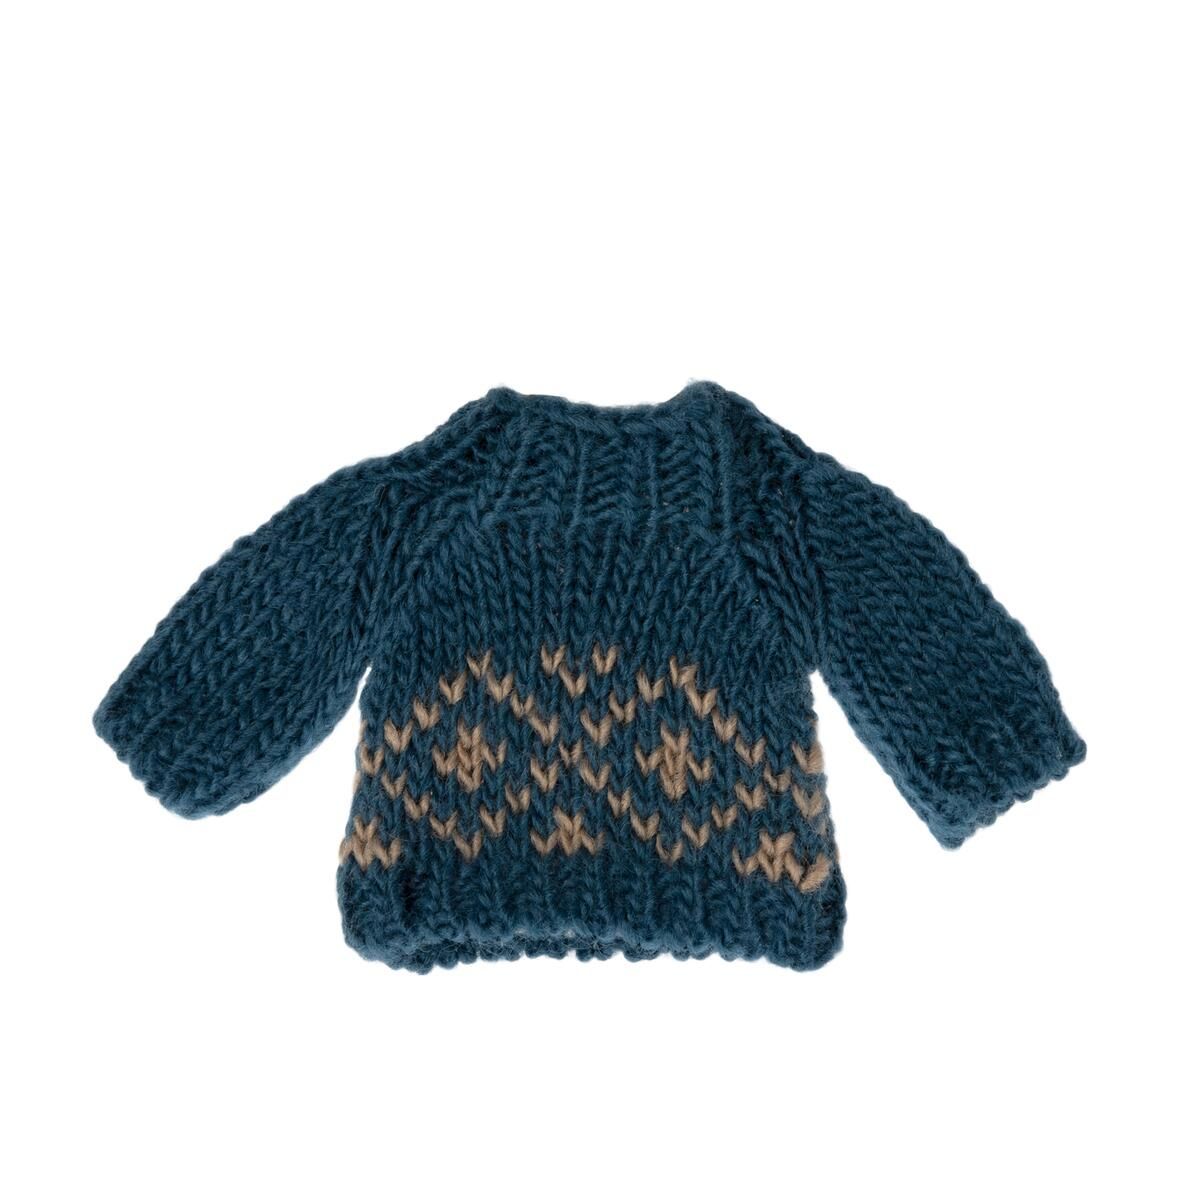 Maileg tøj mus - Strikket sweater, blå - 89,95 - Køb på Olisan.dk